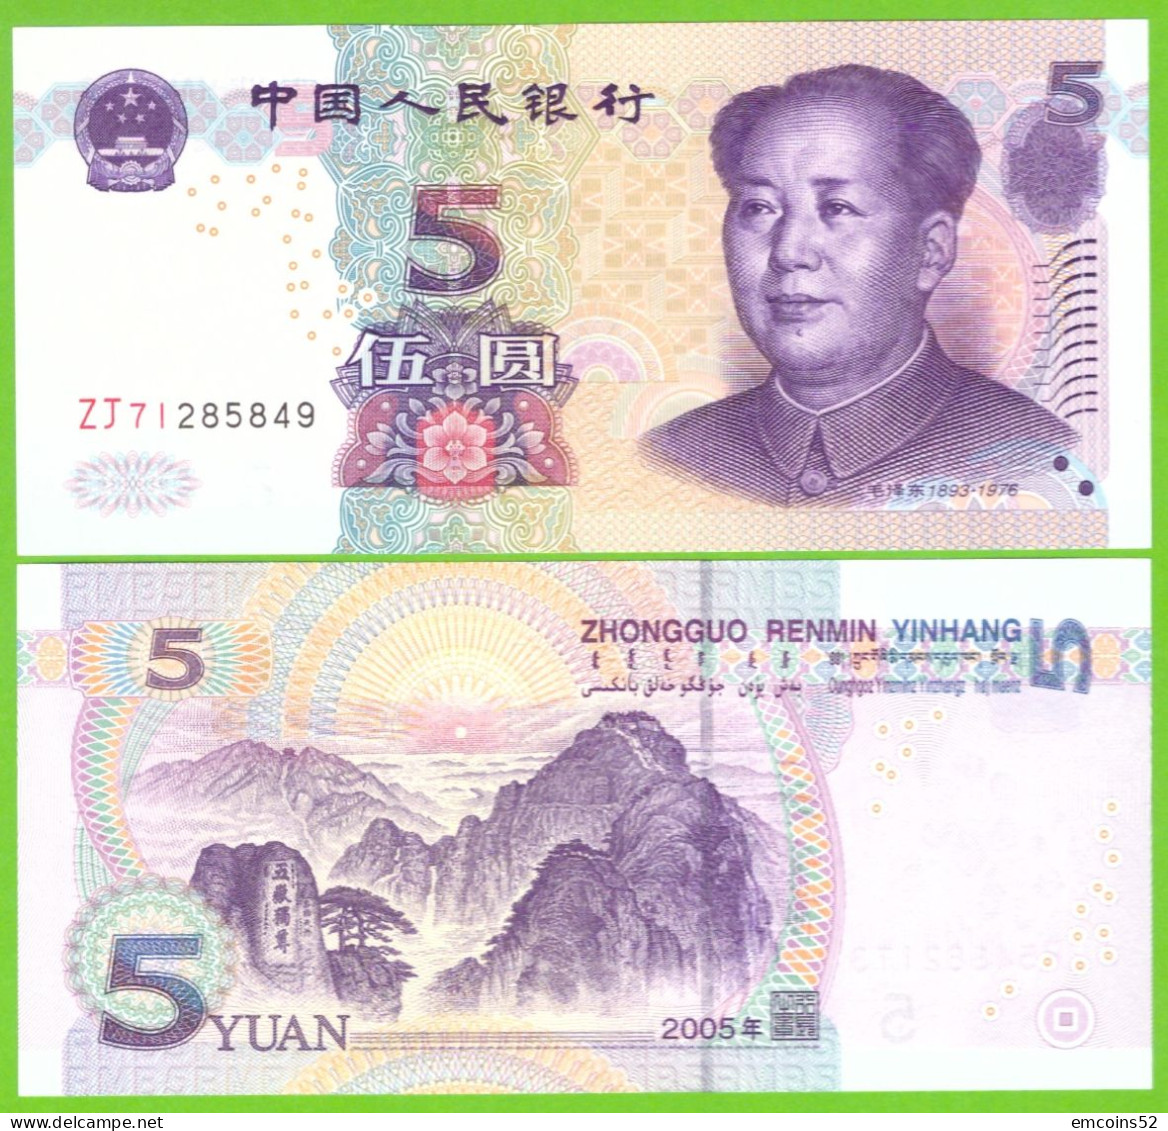 CHINA 5 YUAN 2005  P-903  UNC - China